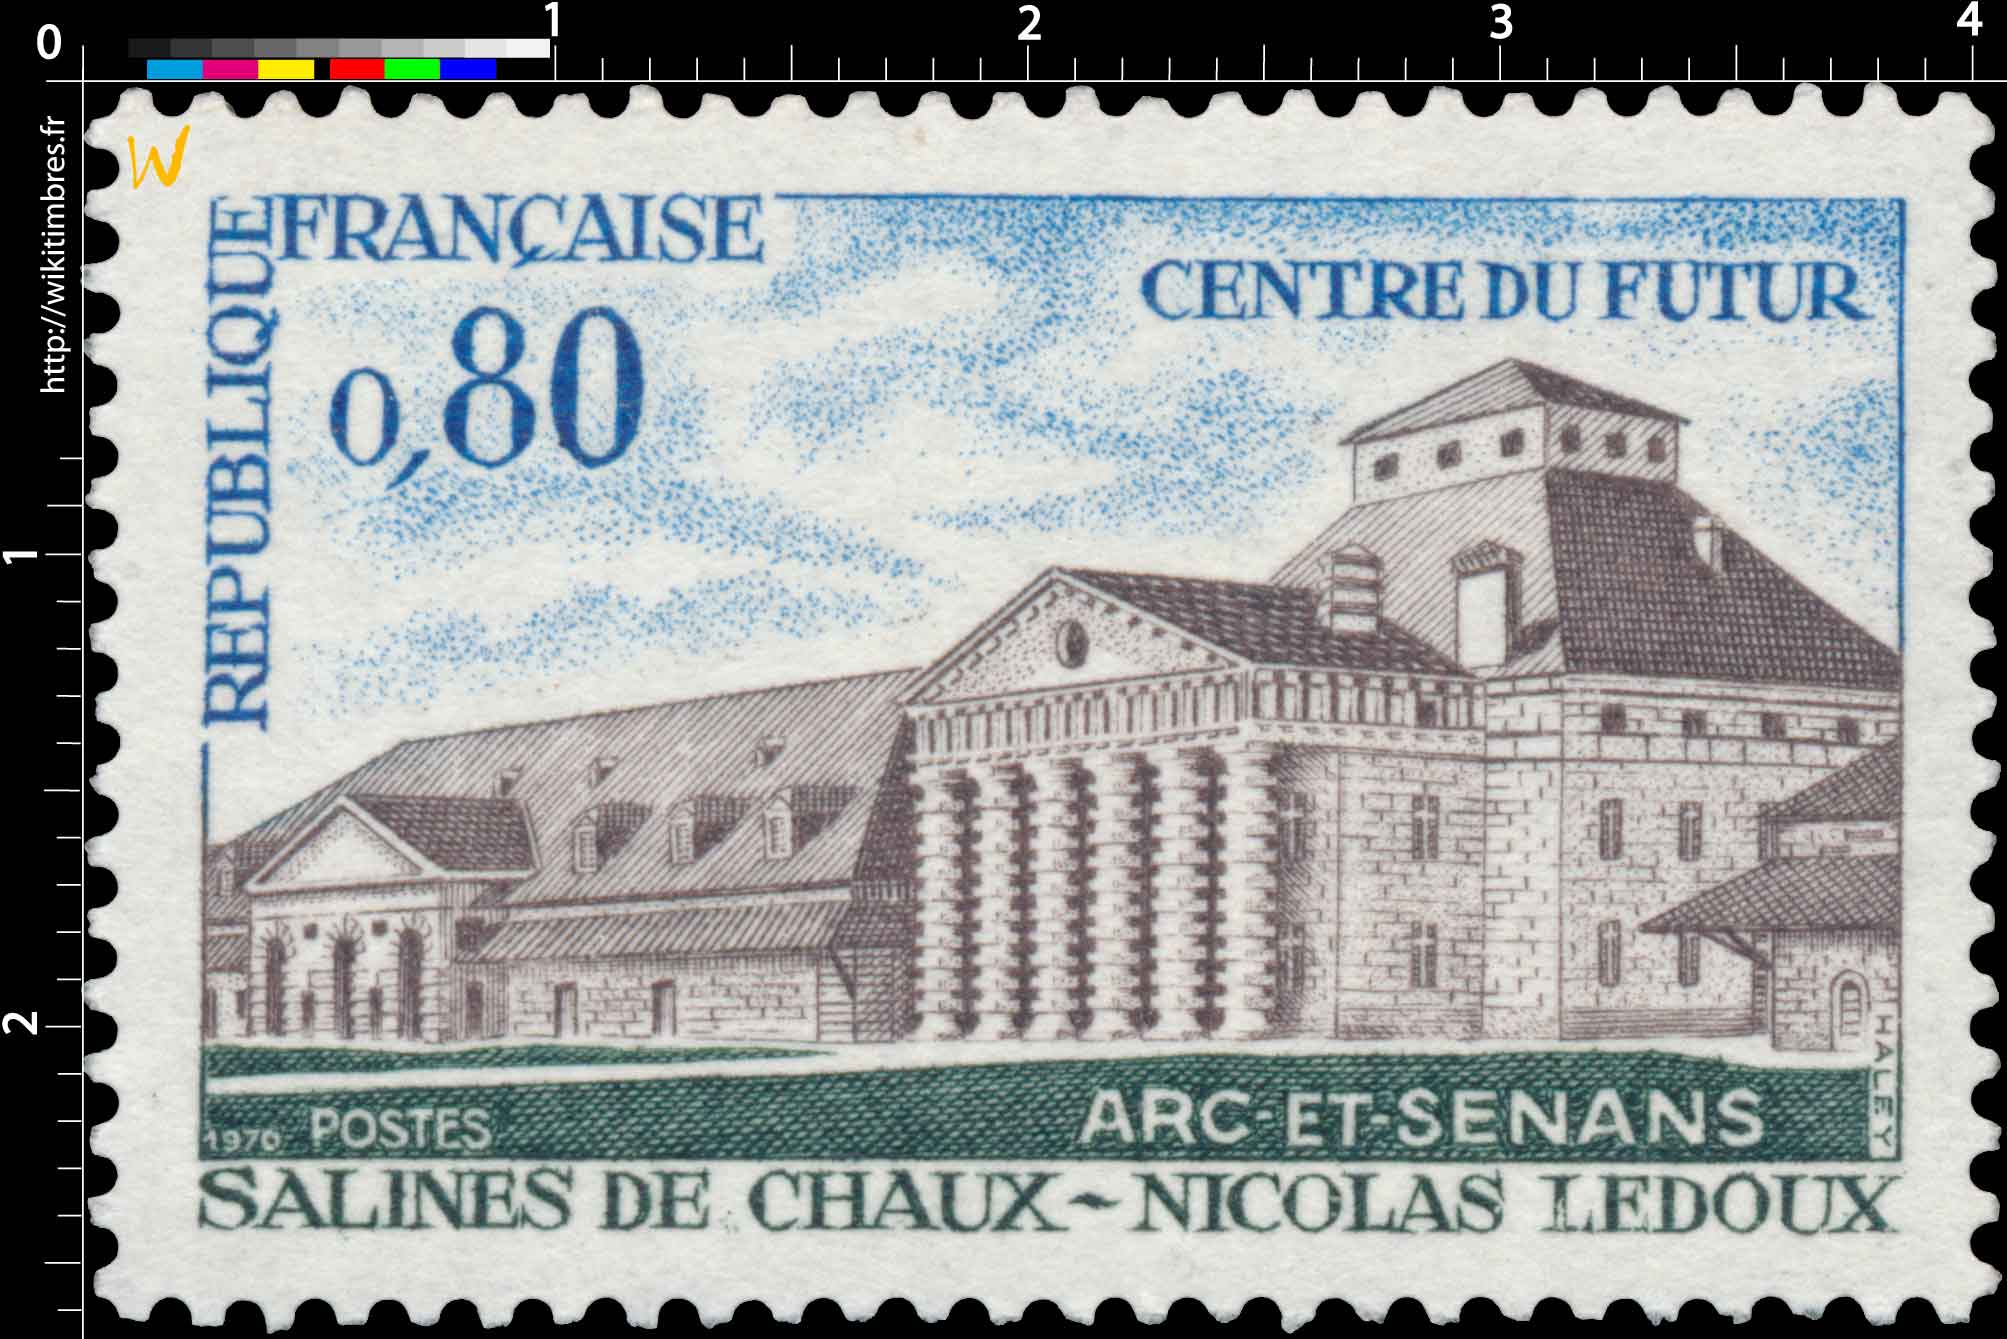 1970 CENTRE DU FUTUR ARC-ET-SENANS SALINES DE CHAUX - NICOLAS LEDOUX